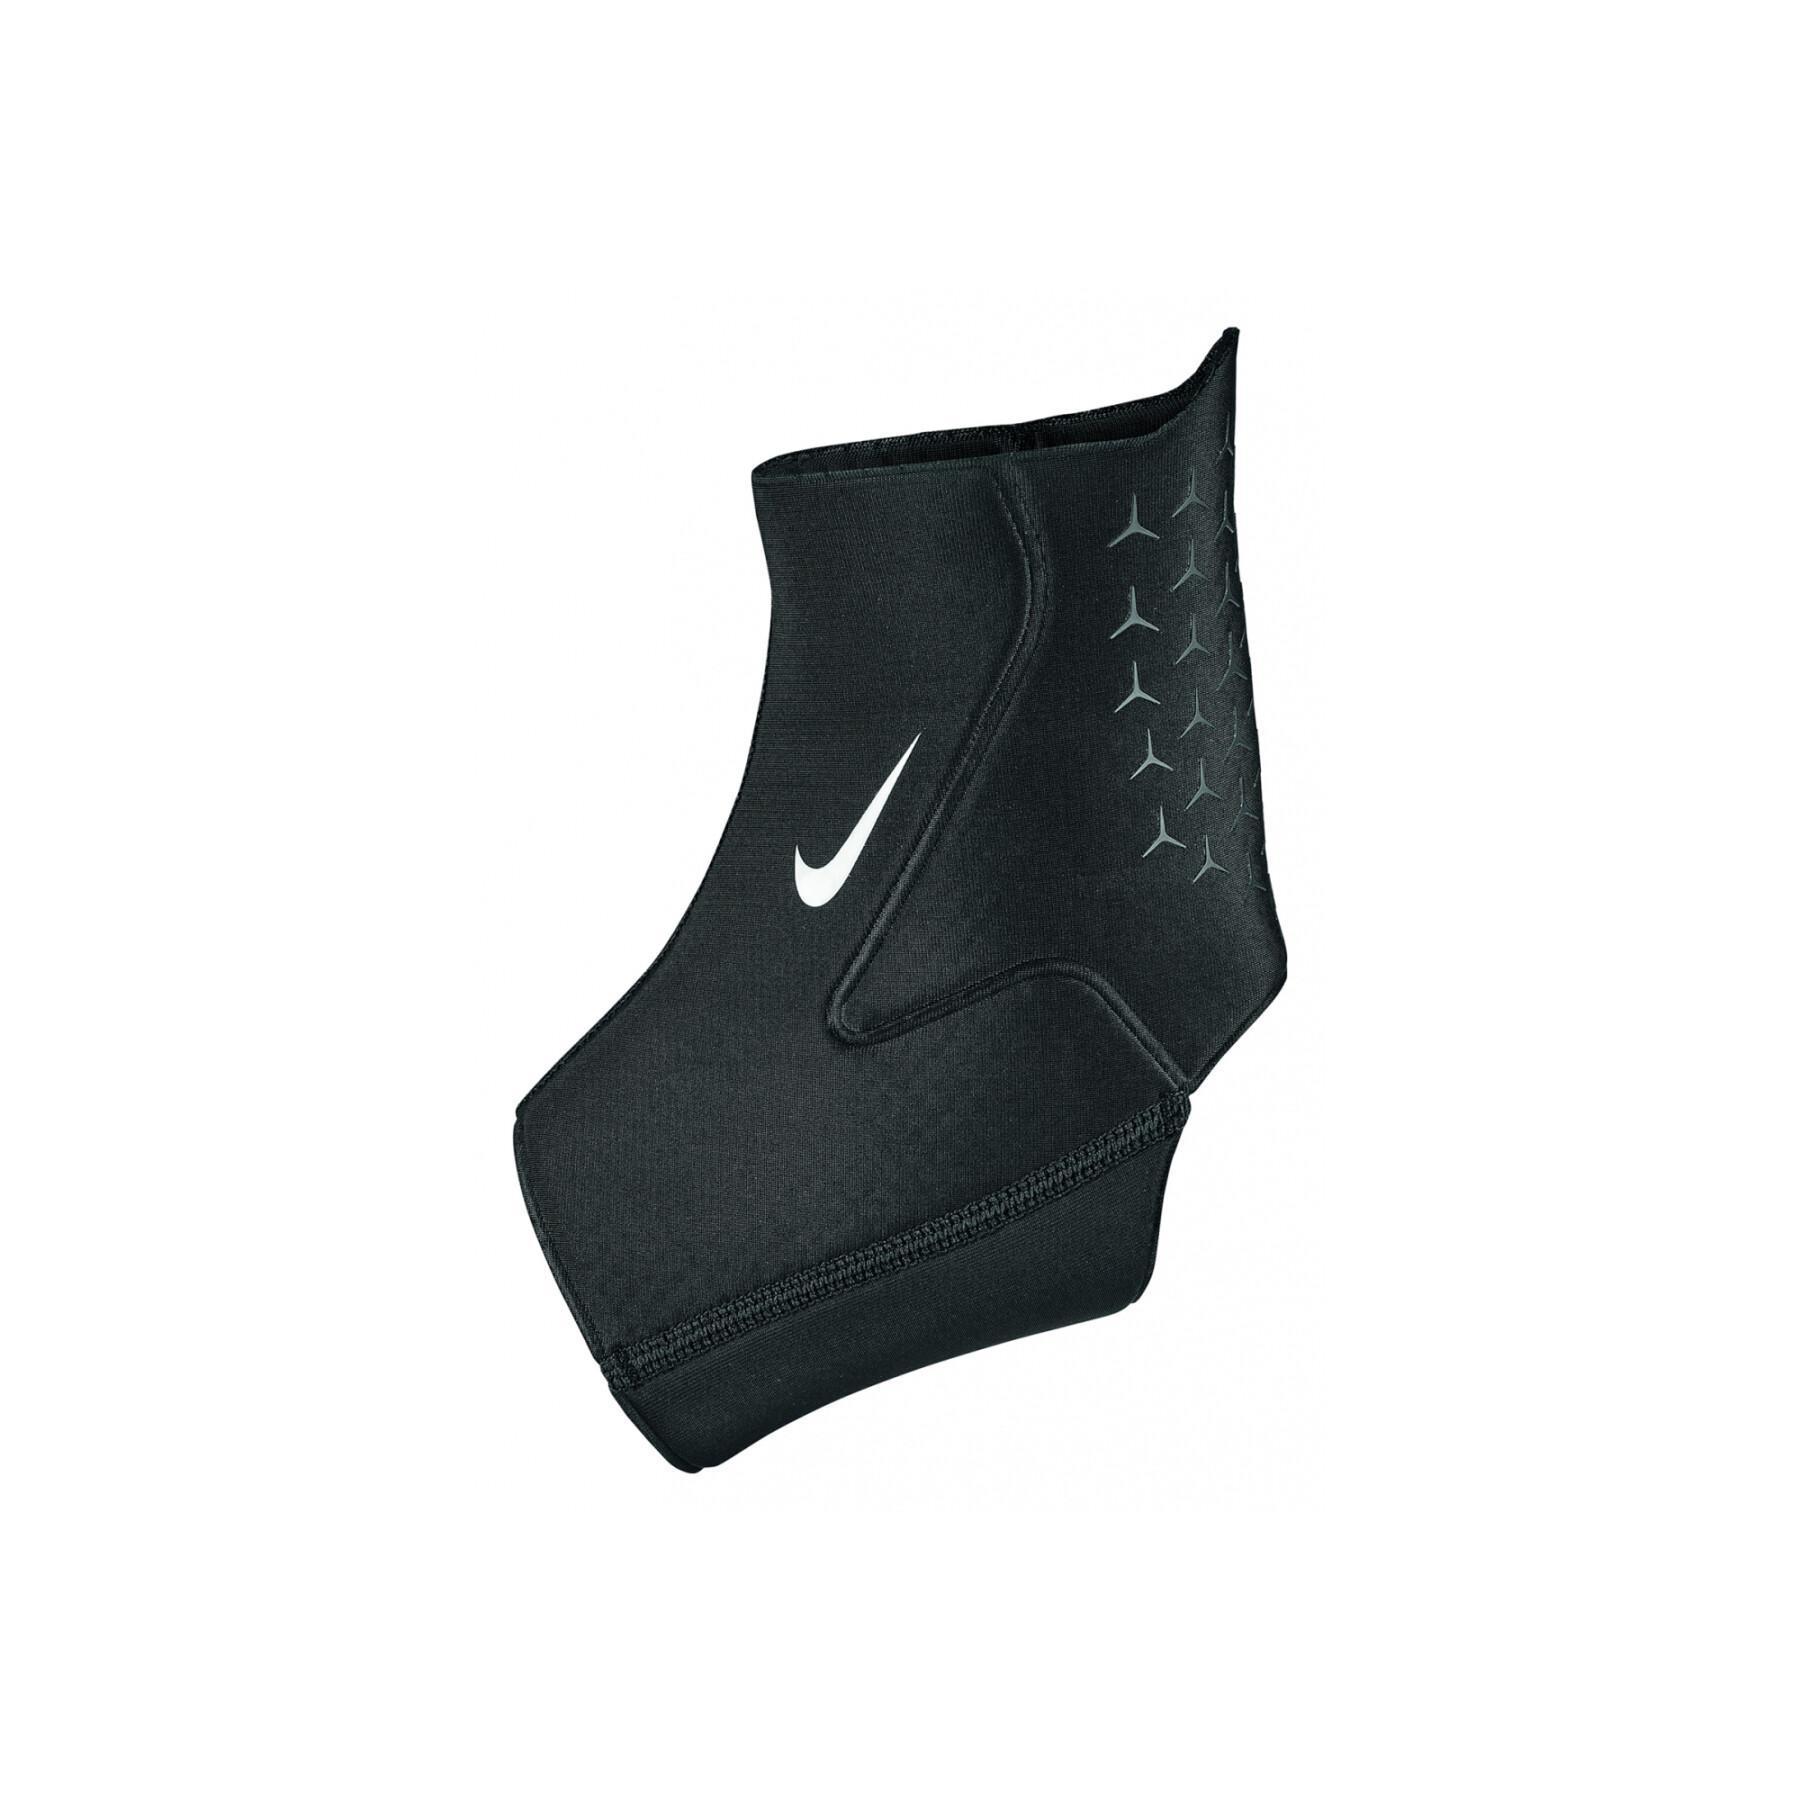 Anklet Nike pro 3.0